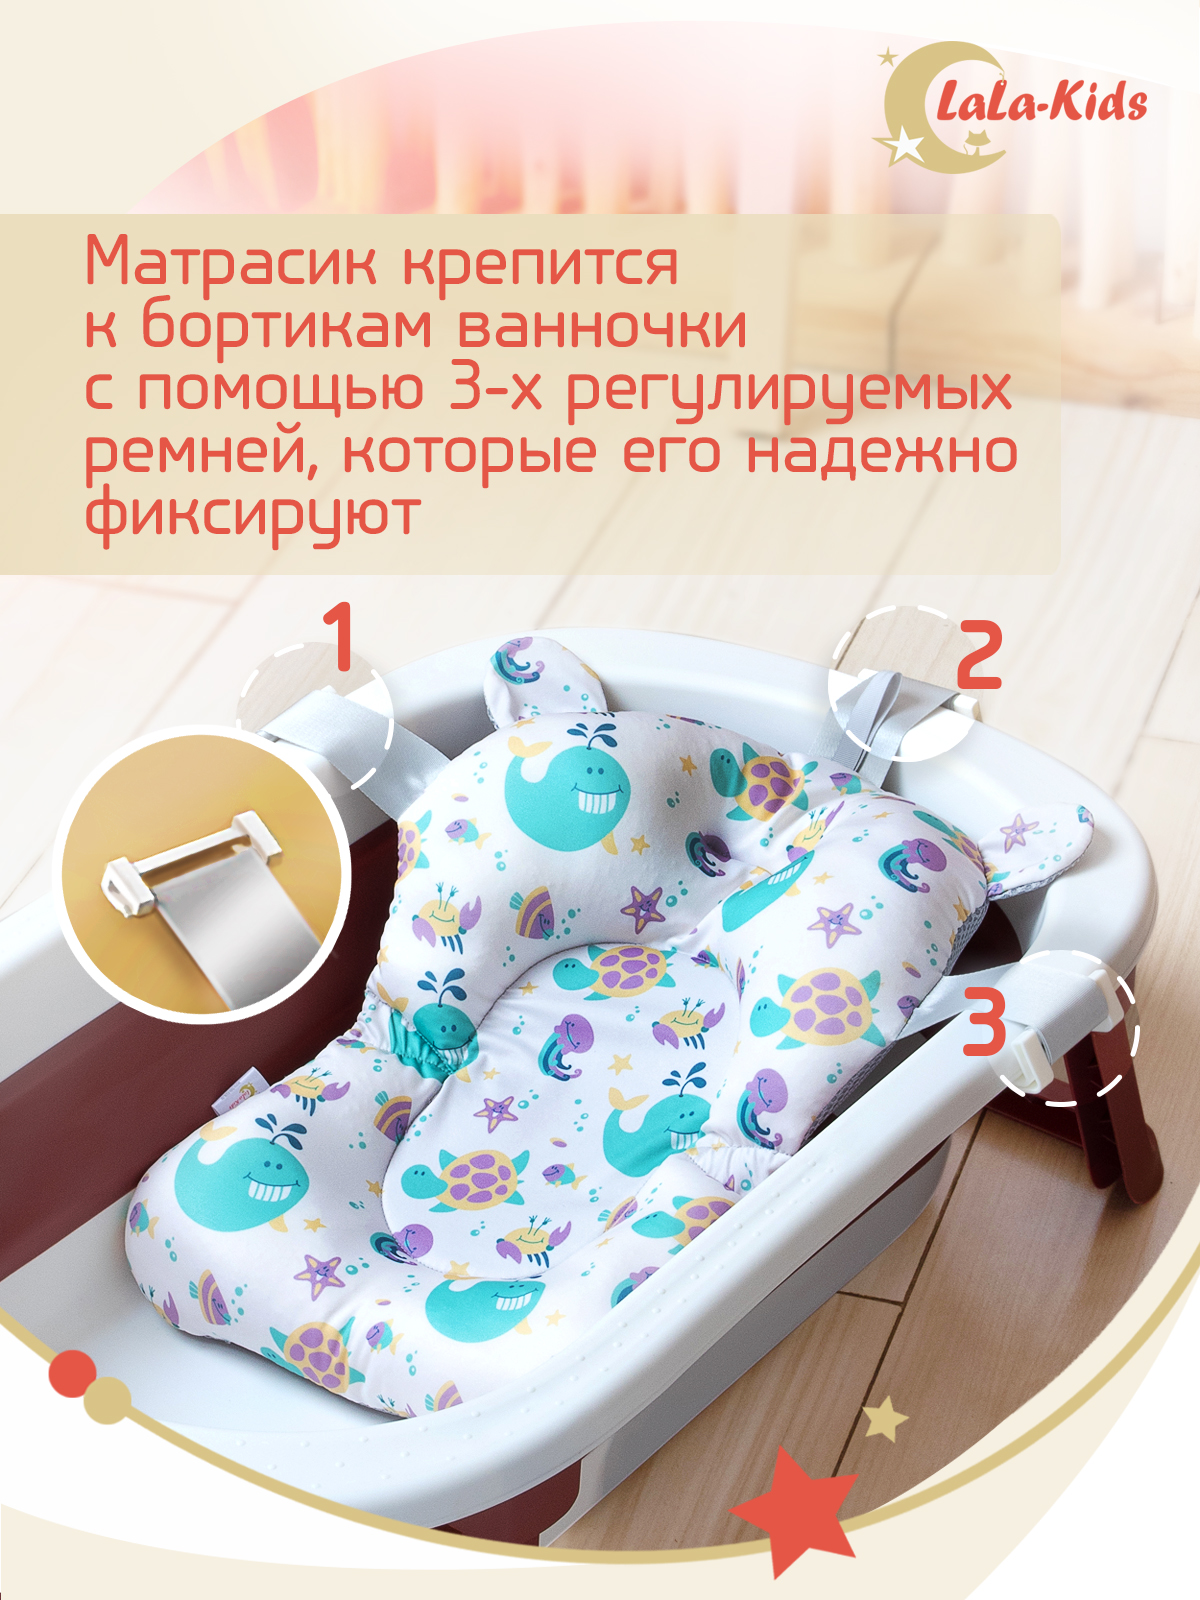 Матрасик для детской ванночки LaLa-Kids для купания новорожденных - фото 9